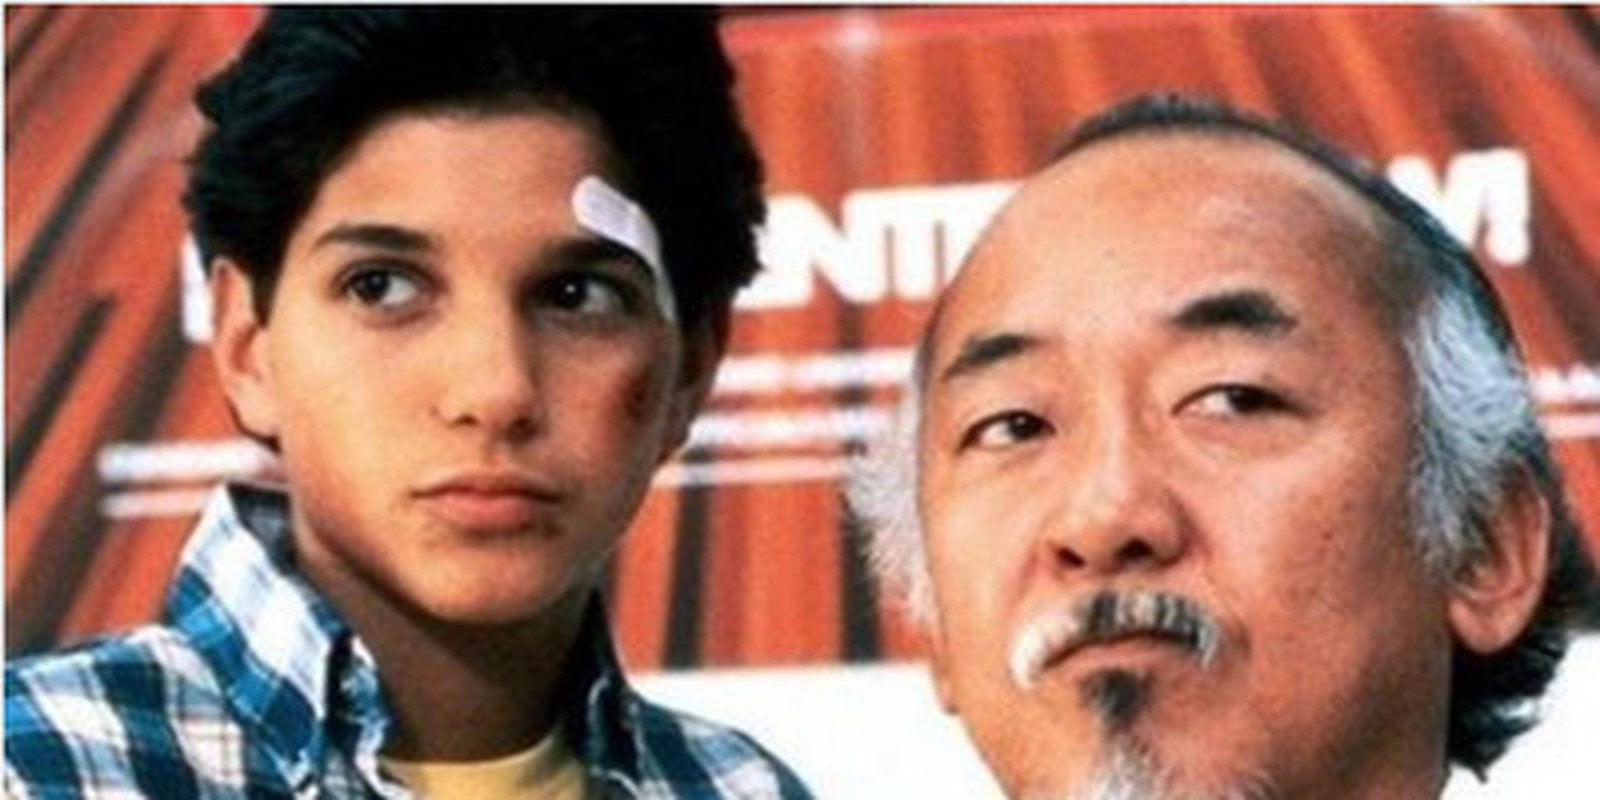 La mítica película 'Karate Kid' tendrá una secuela en forma de serie de televisión